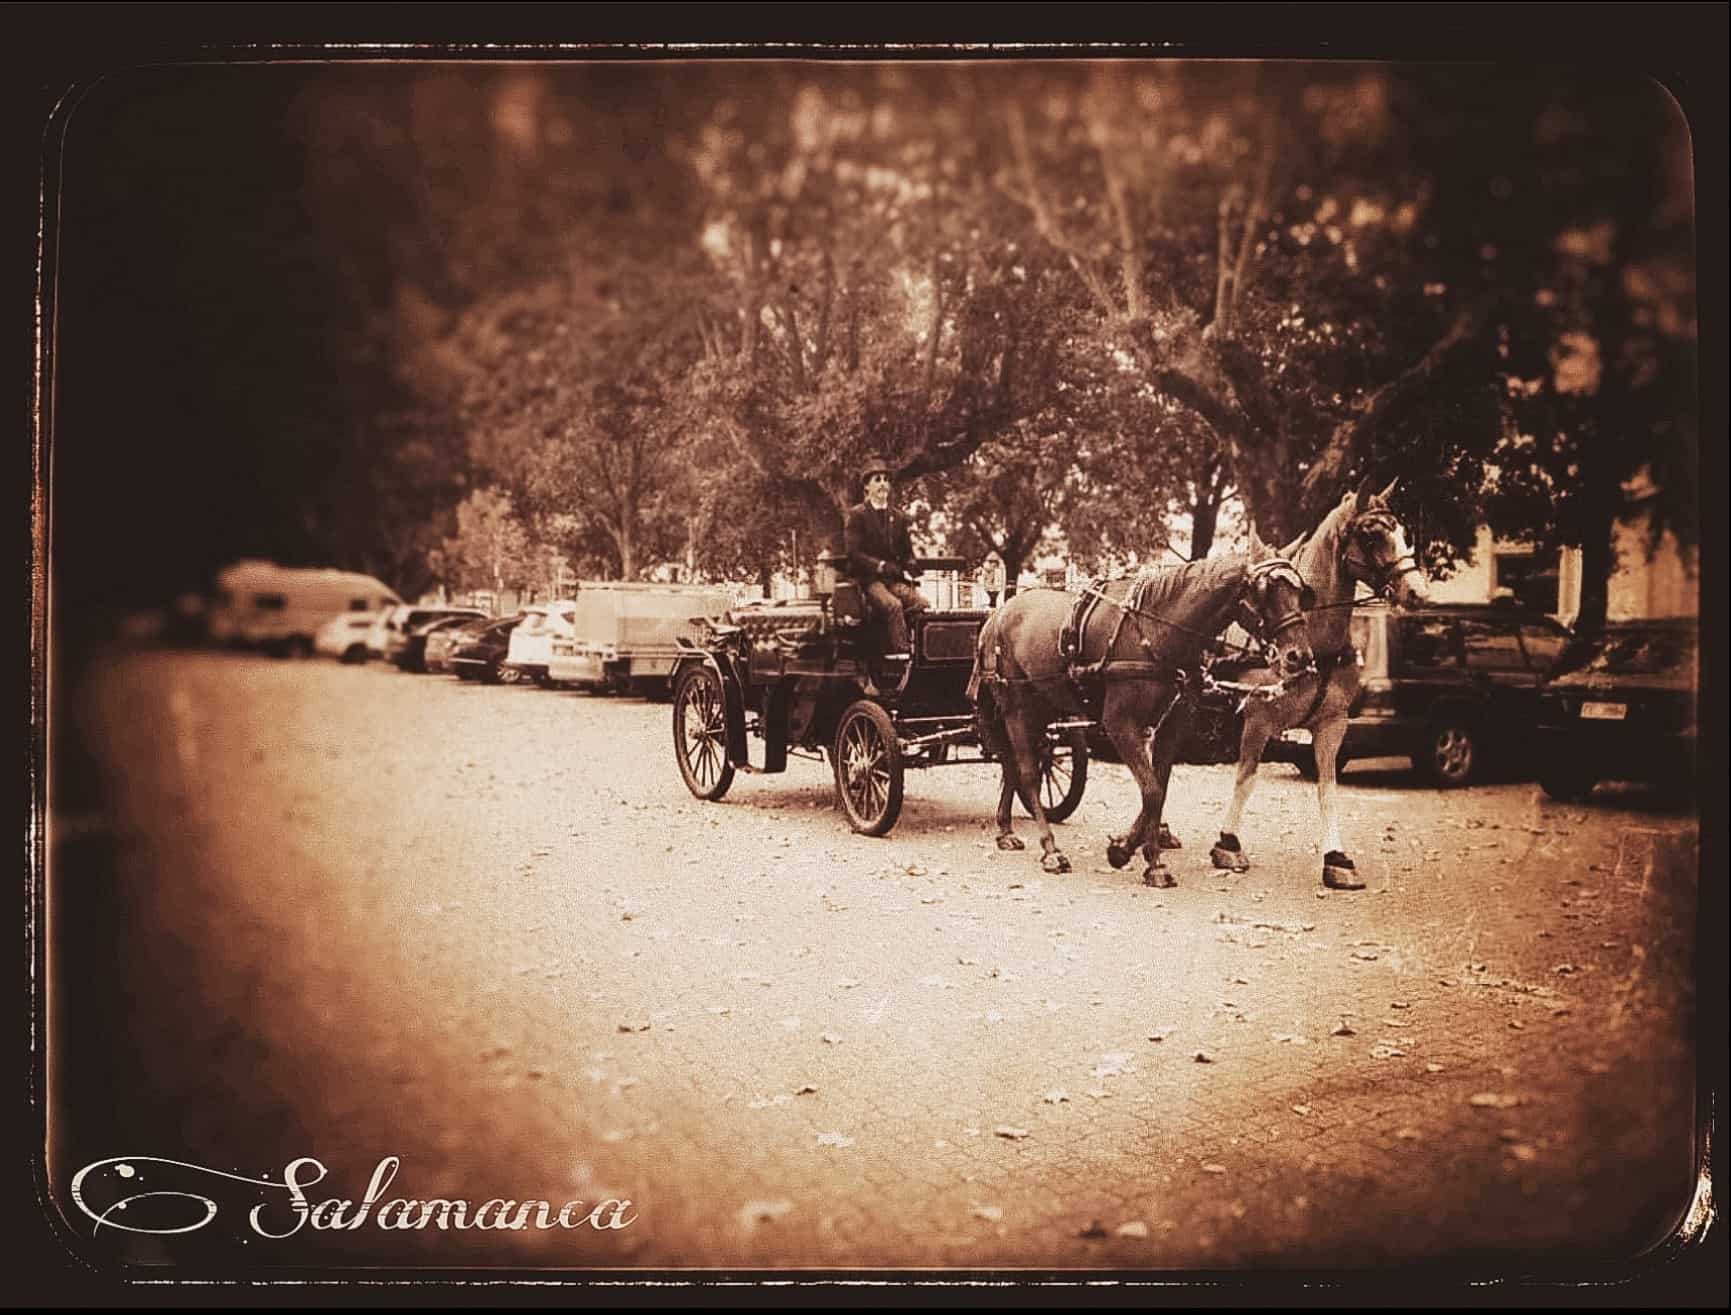 Carriage on Salamanca